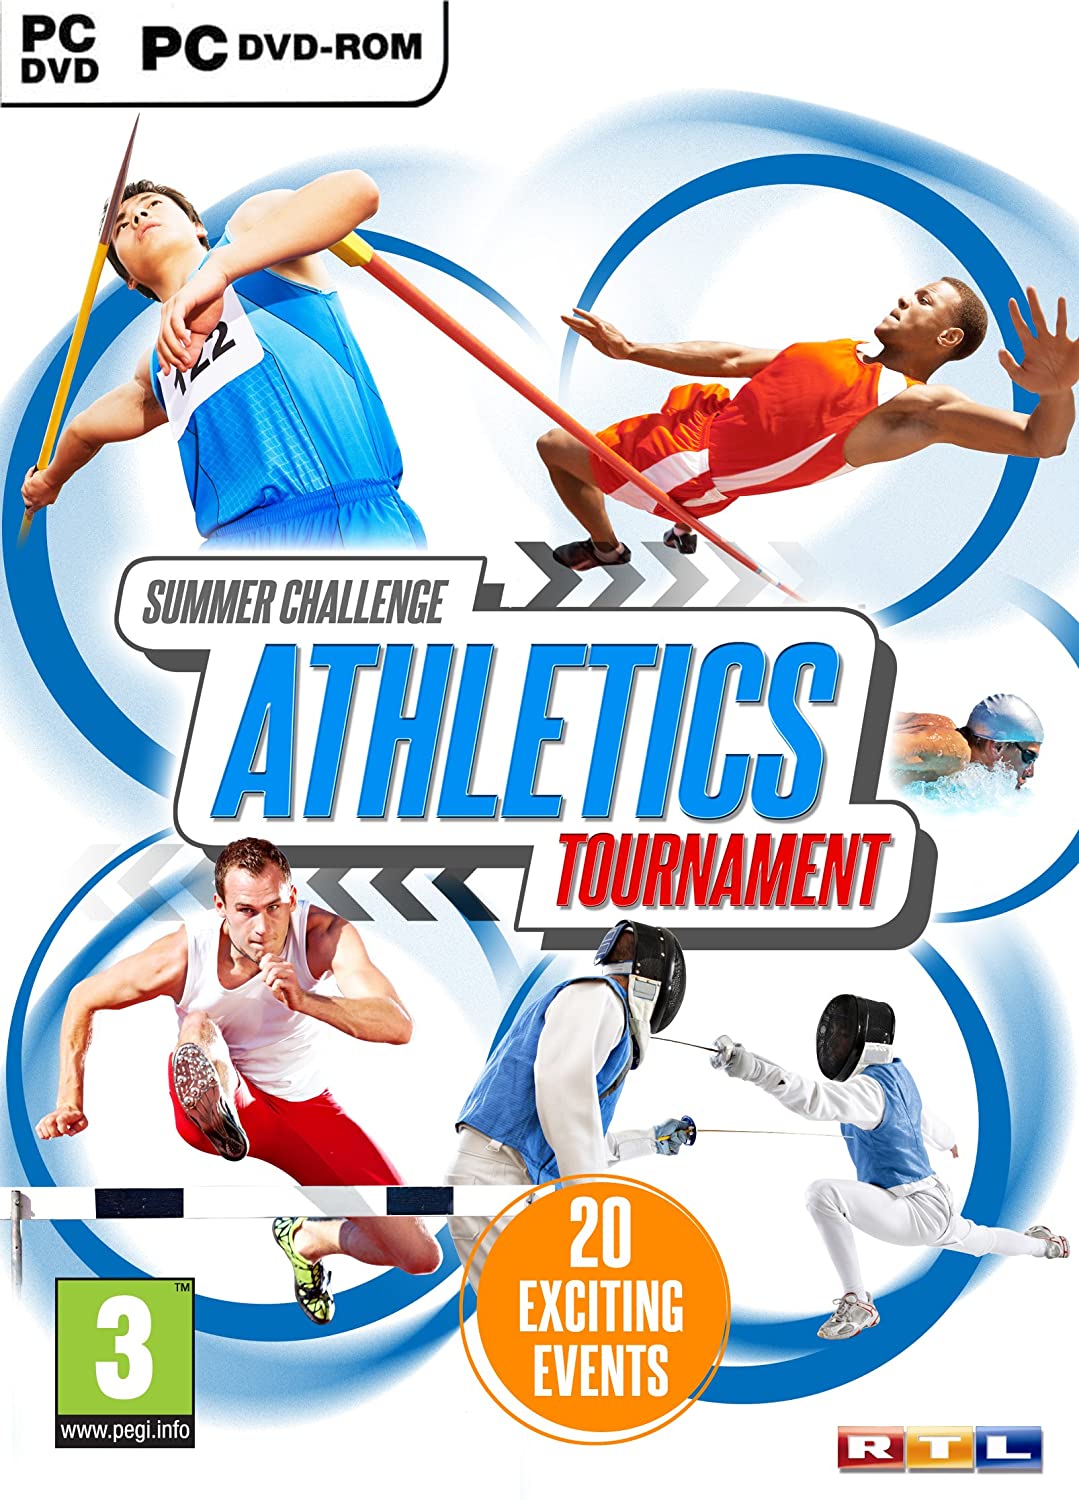 Leichtathletik-Turnier (PC-DVD)